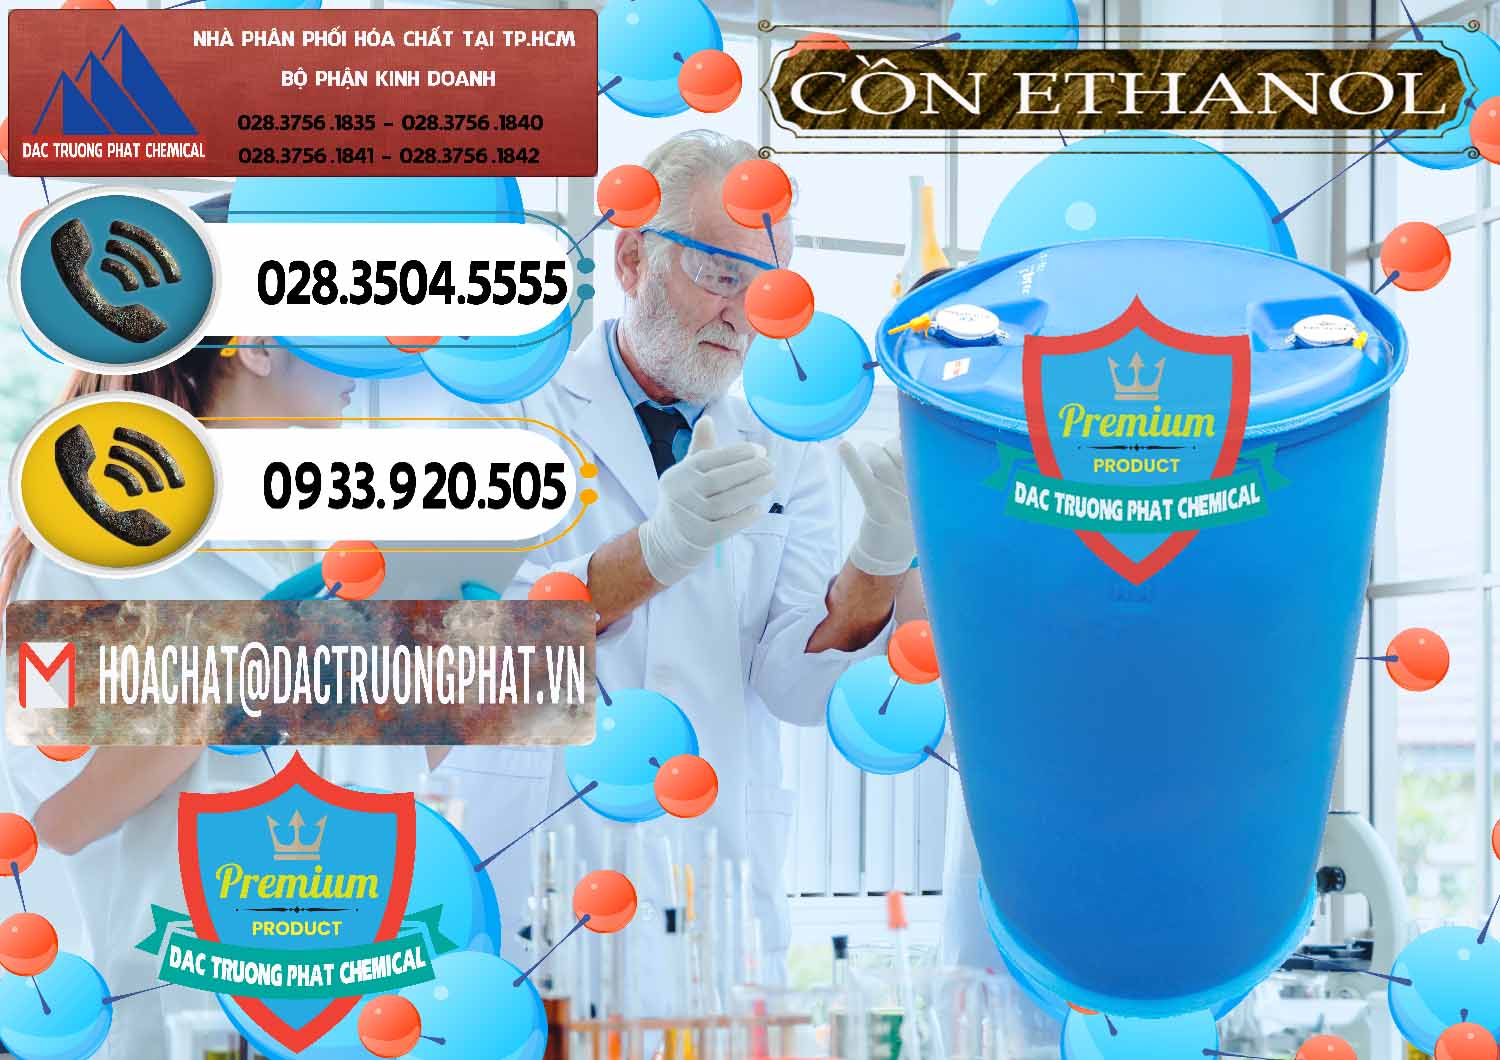 Công ty bán - phân phối Cồn Ethanol - C2H5OH Thực Phẩm Food Grade Việt Nam - 0330 - Chuyên phân phối và cung cấp hóa chất tại TP.HCM - hoachatdetnhuom.vn